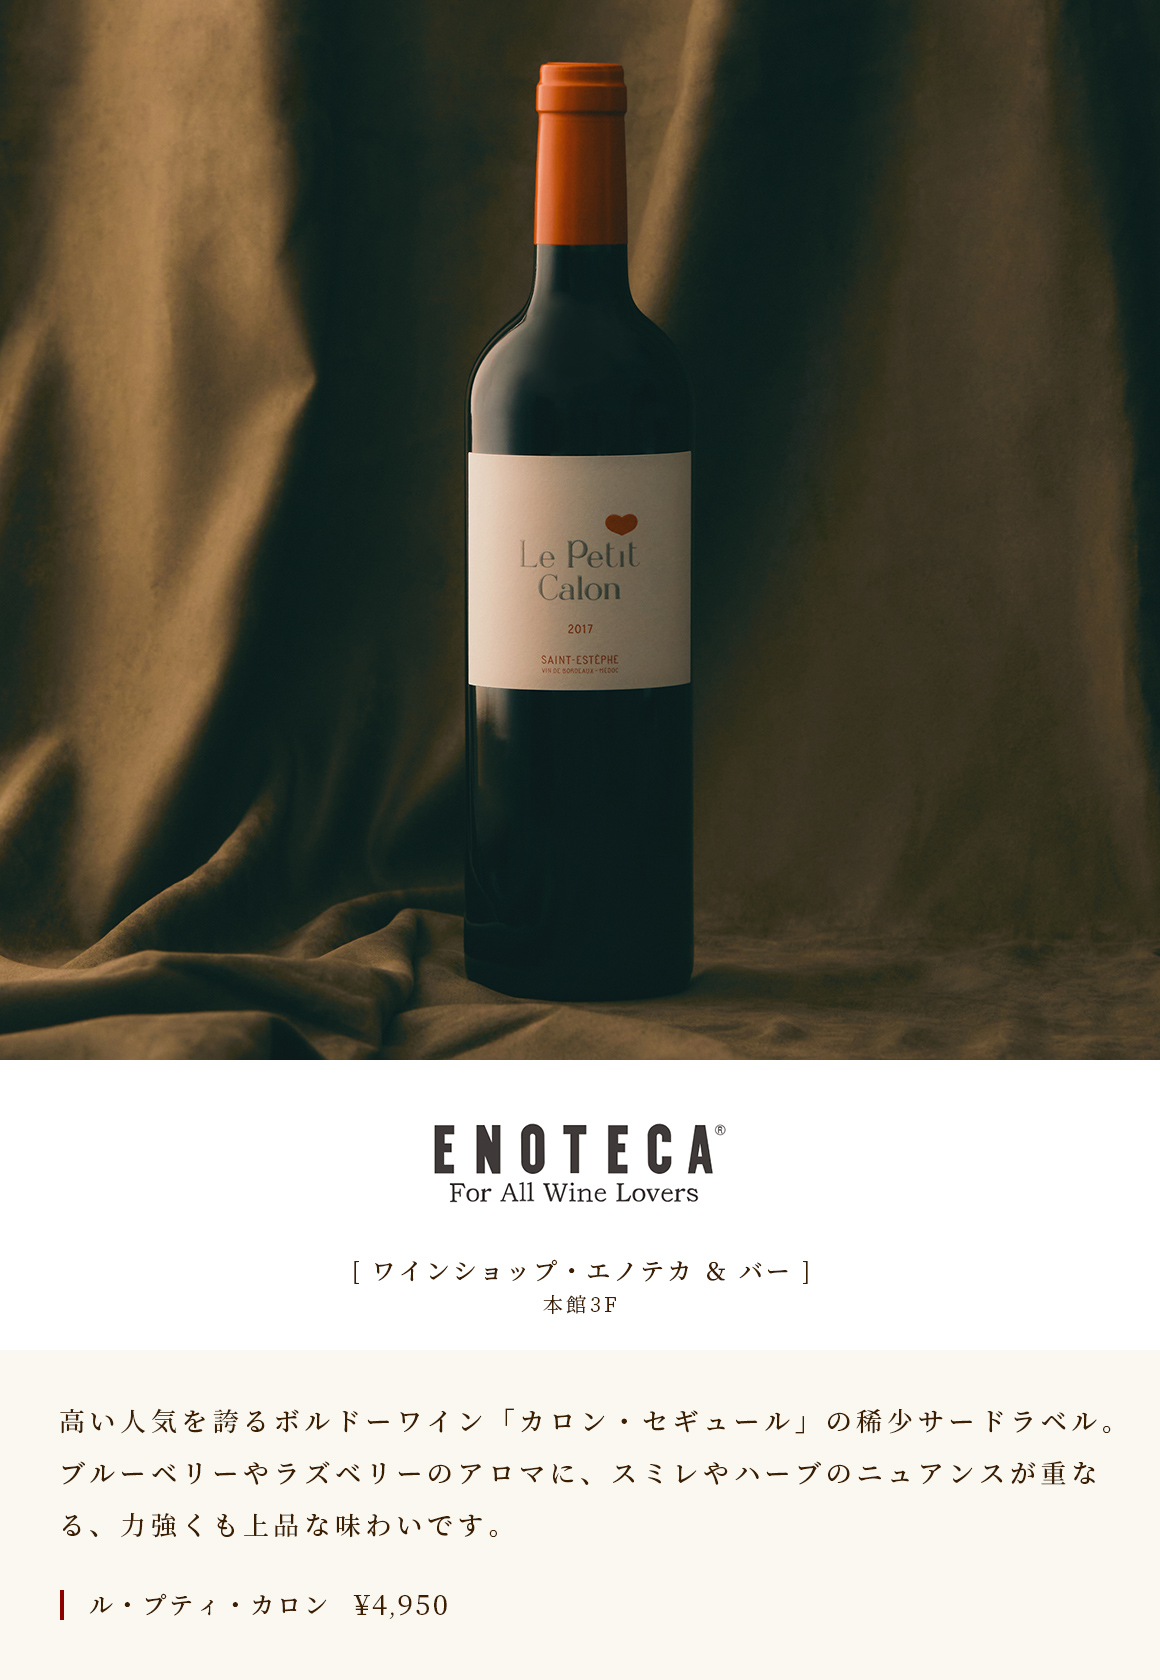 [ ワインショップ・エノテカ ＆ バー ]　本館3F　高い人気を誇るボルドーワイン「カロン・セギュール」の稀少サードラベル。ブルーベリーやラズベリーのアロマに、スミレやハーブのニュアンスが重なる、力強くも上品な味わいです。　ル・プティ・カロン￥4,950